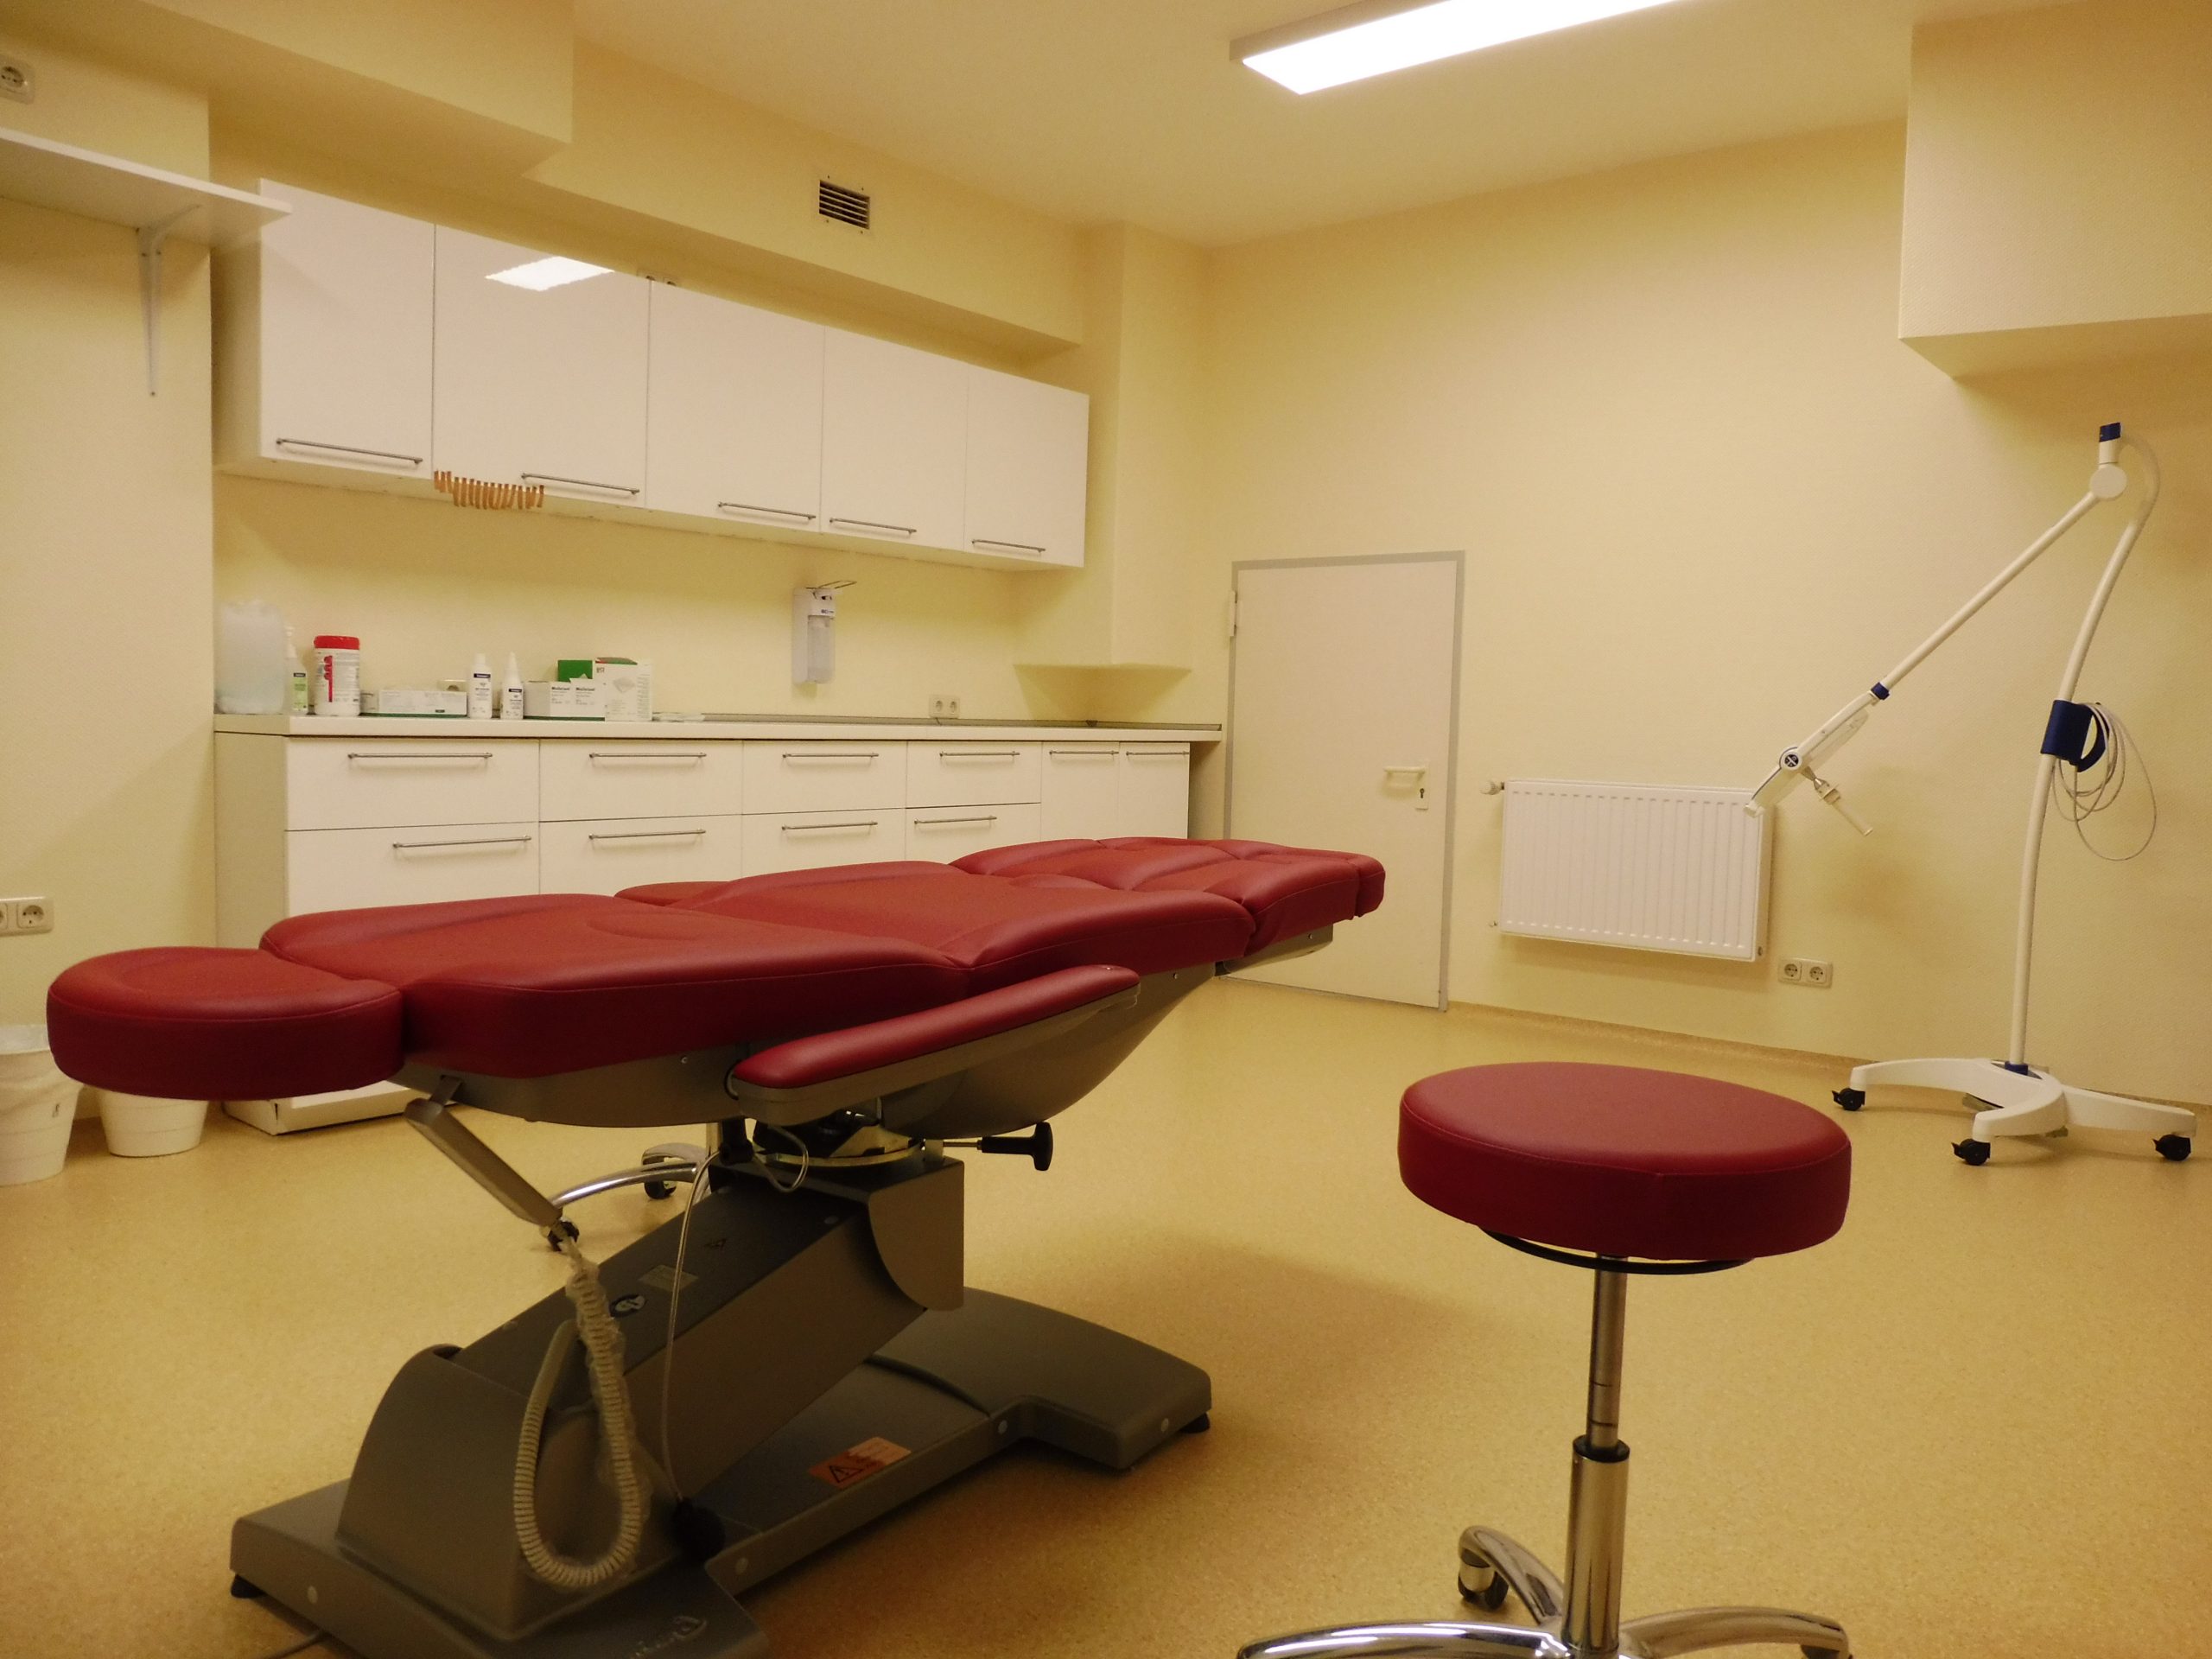 Das Behandlungszimmer hat einen roten Behandlungsstuhl sowie einen roten Rollhocker. An der Wand befinden sich Ober- und Unterschränke. Diverse technische Geräte sind ebenfalls zu finden.